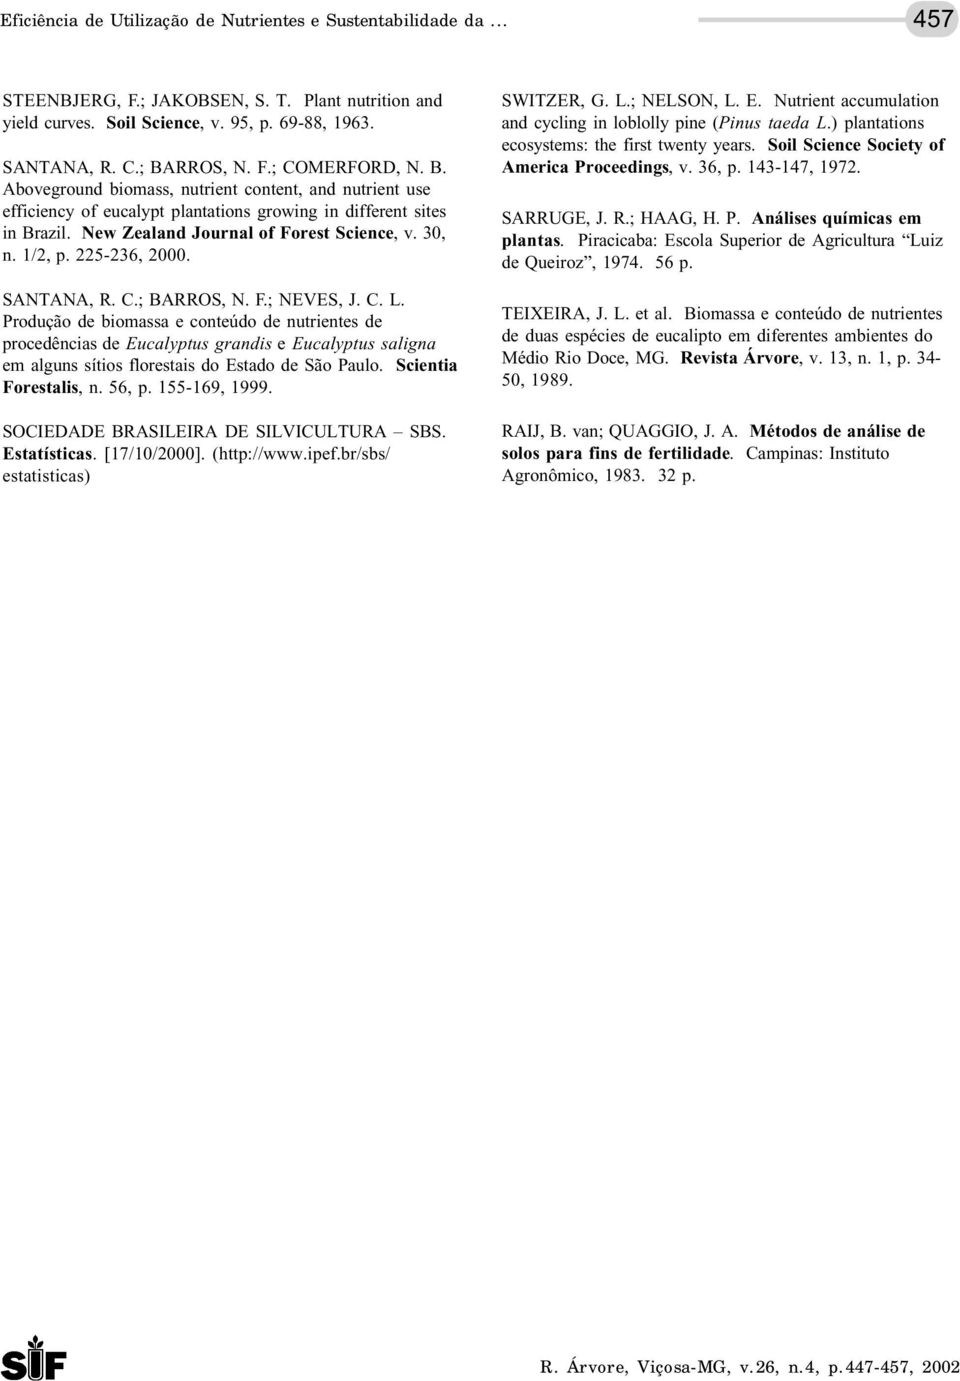 30, n. 1/2, p. 225-236, 2000. SANTANA, R. C.; BARROS, N. F.; NEVES, J. C. L.